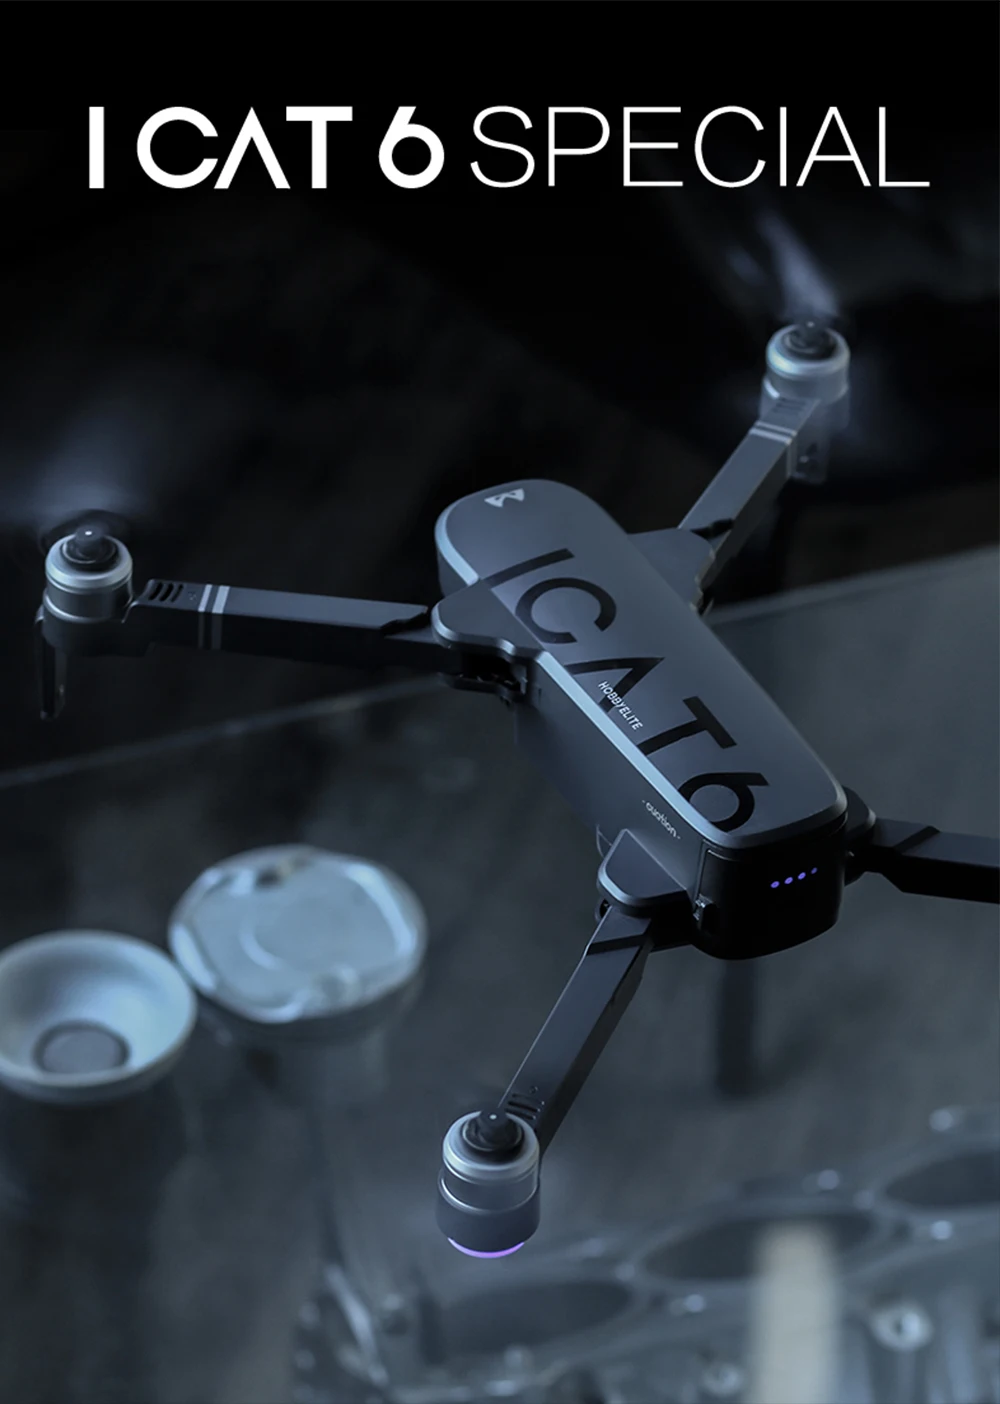 ICAT6 игрушки Дрон 4k дроны gps с камерой HD rc вертолет Профессиональный Дрон Селфи